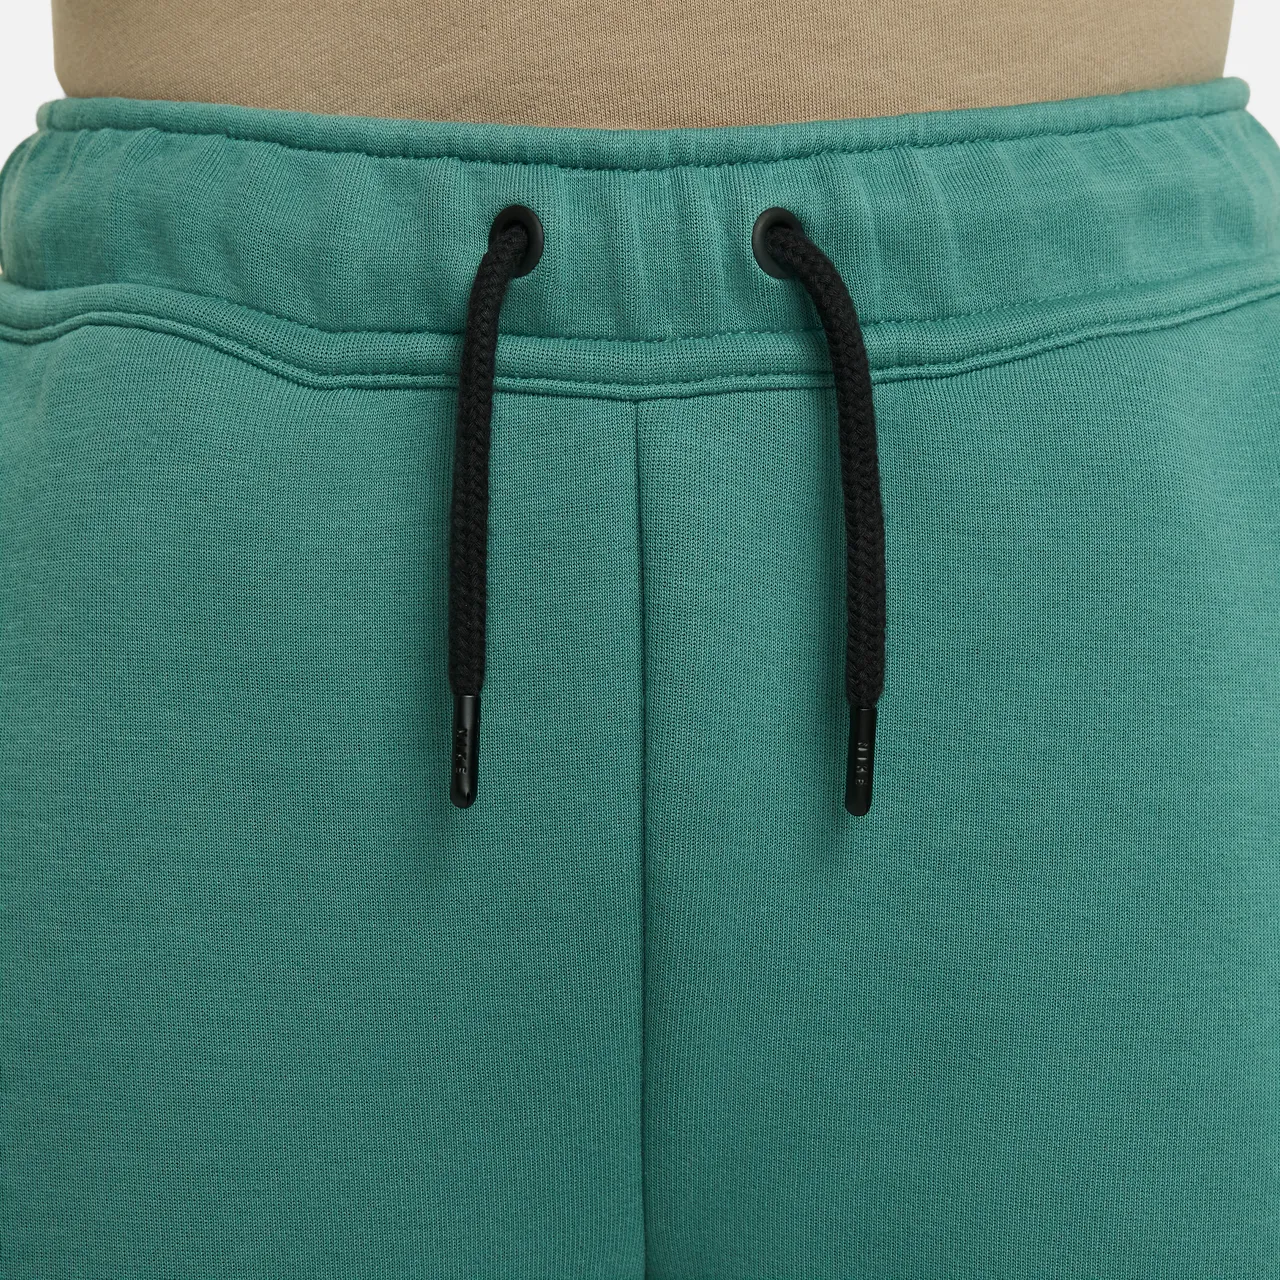 Nike Sportswear Tech Fleece Older Kids' (Boys') Trousers - Green - Cotton